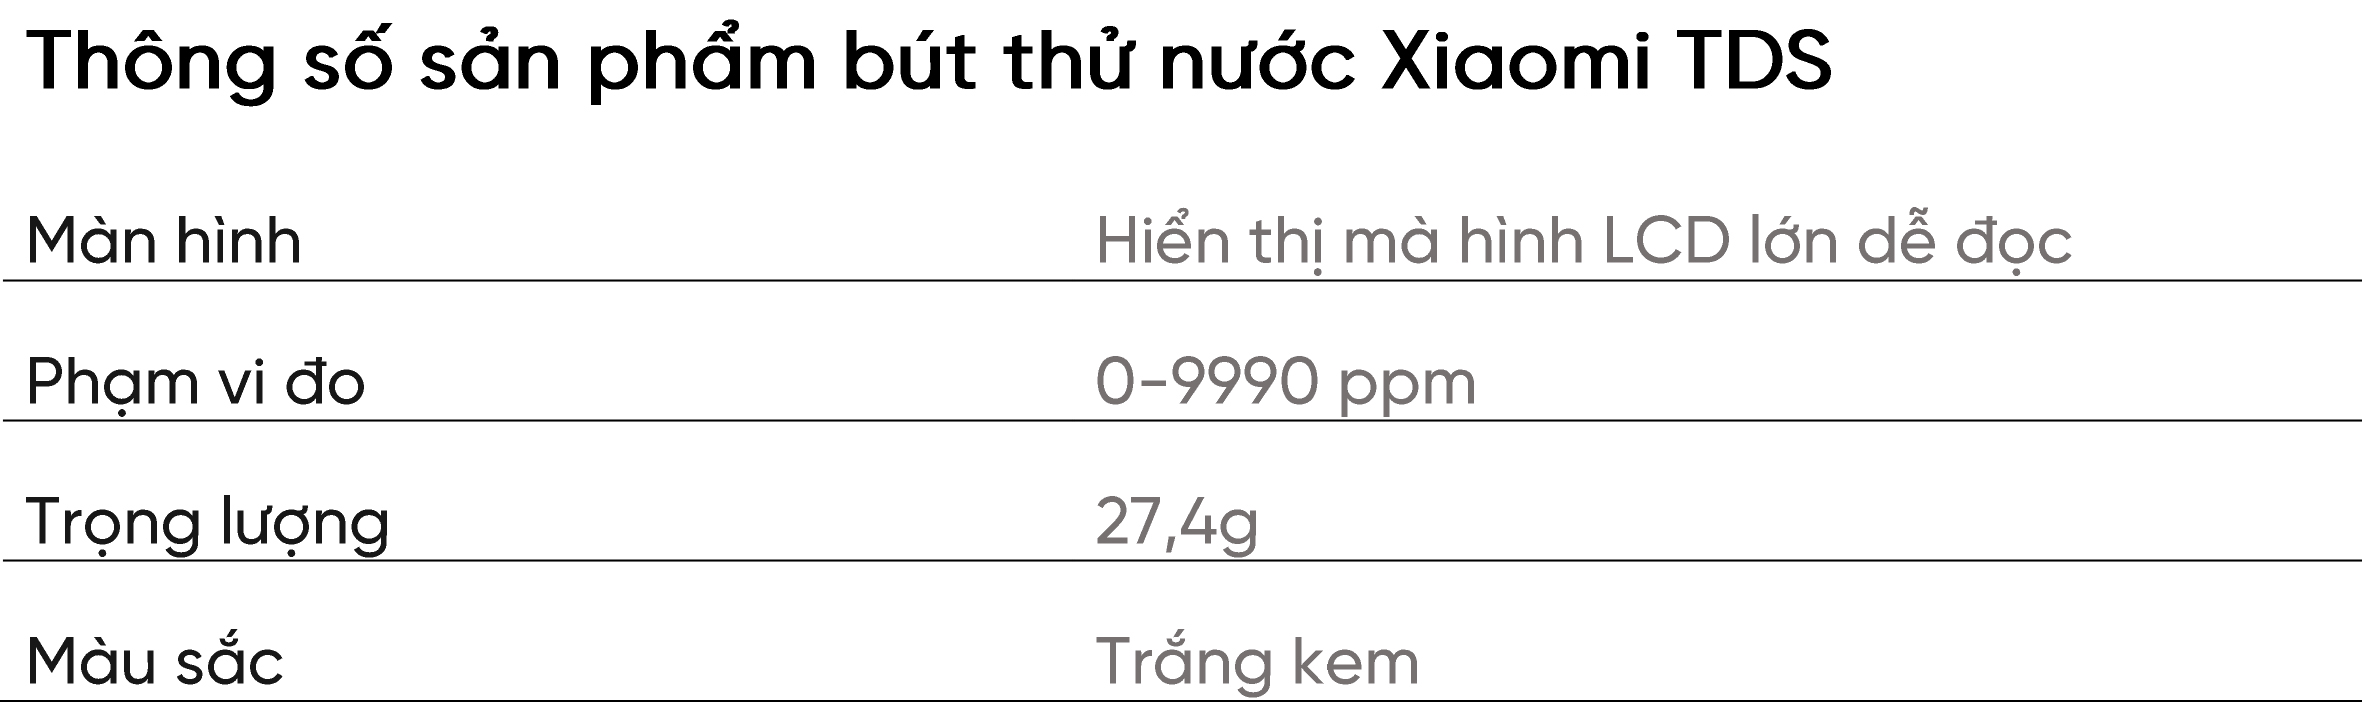 Bút thử nước Xiaomi TDS